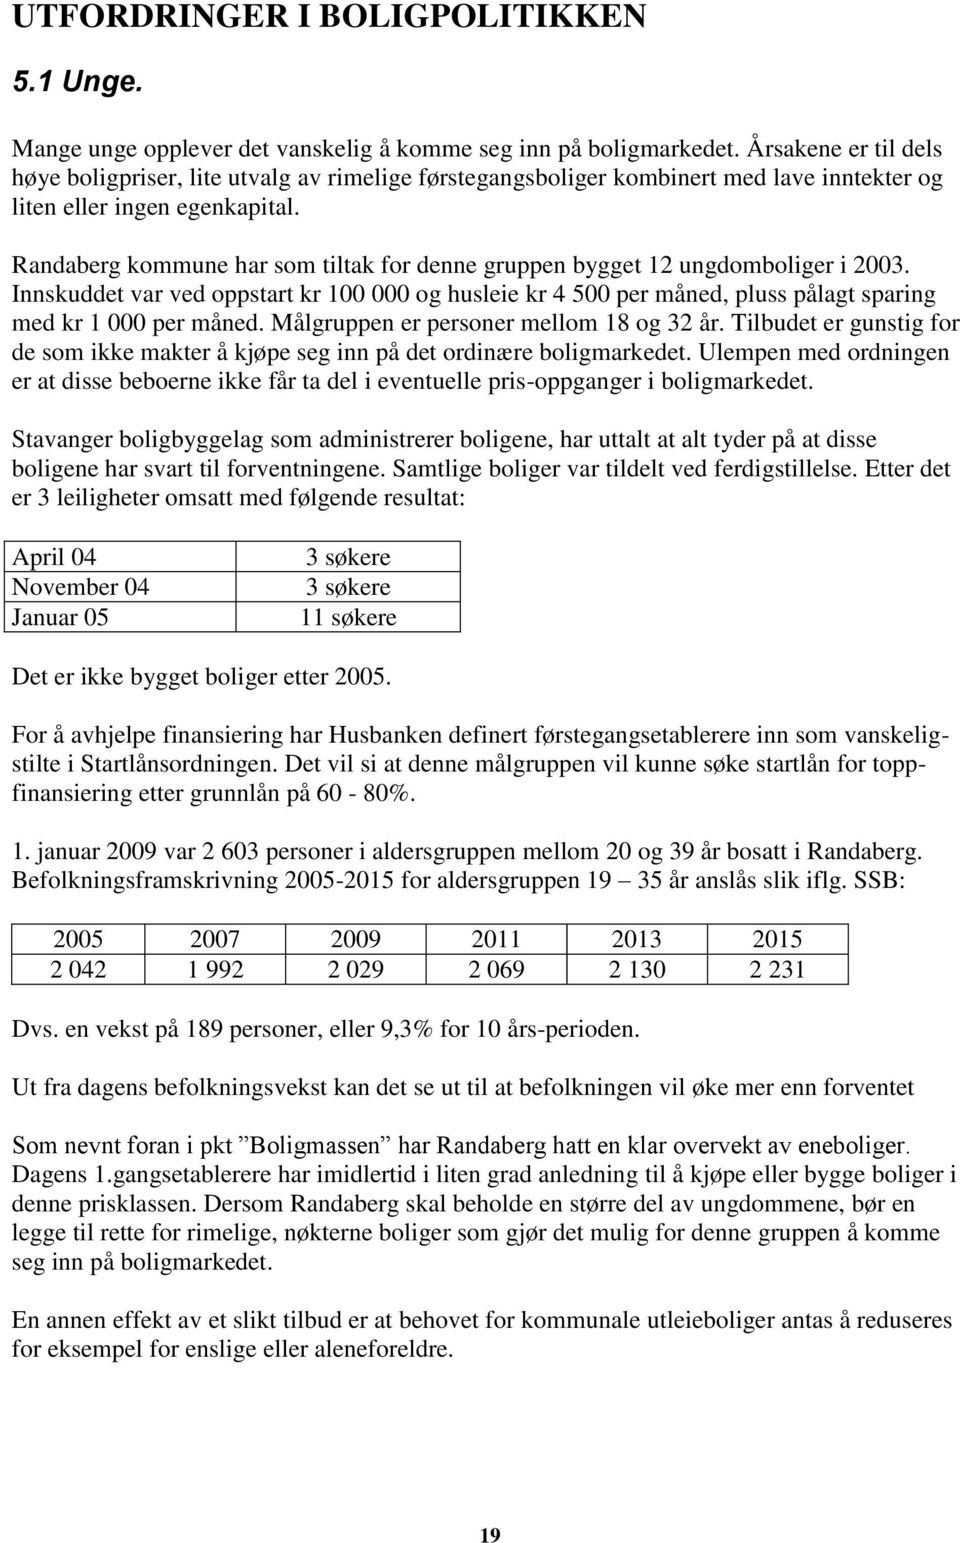 Randaberg kommune har som tiltak for denne gruppen bygget 12 ungdomboliger i 2003. Innskuddet var ved oppstart kr 100 000 og husleie kr 4 500 per måned, pluss pålagt sparing med kr 1 000 per måned.